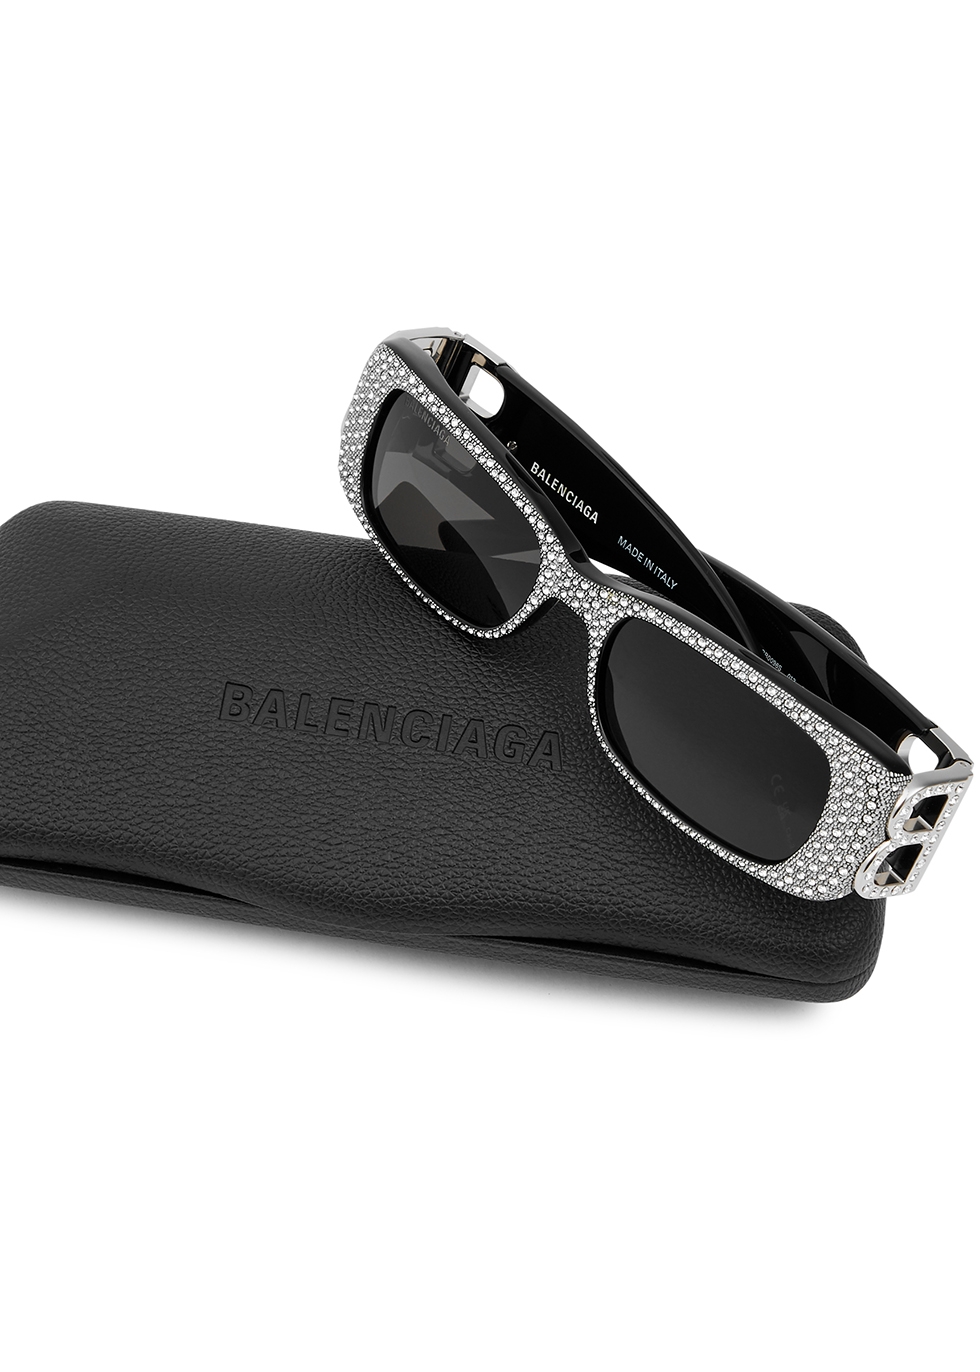 BALENCIAGA sunglasses in acetate with iridescent logo  Black  Balenciaga  sunglasses BB0100S online on GIGLIOCOM